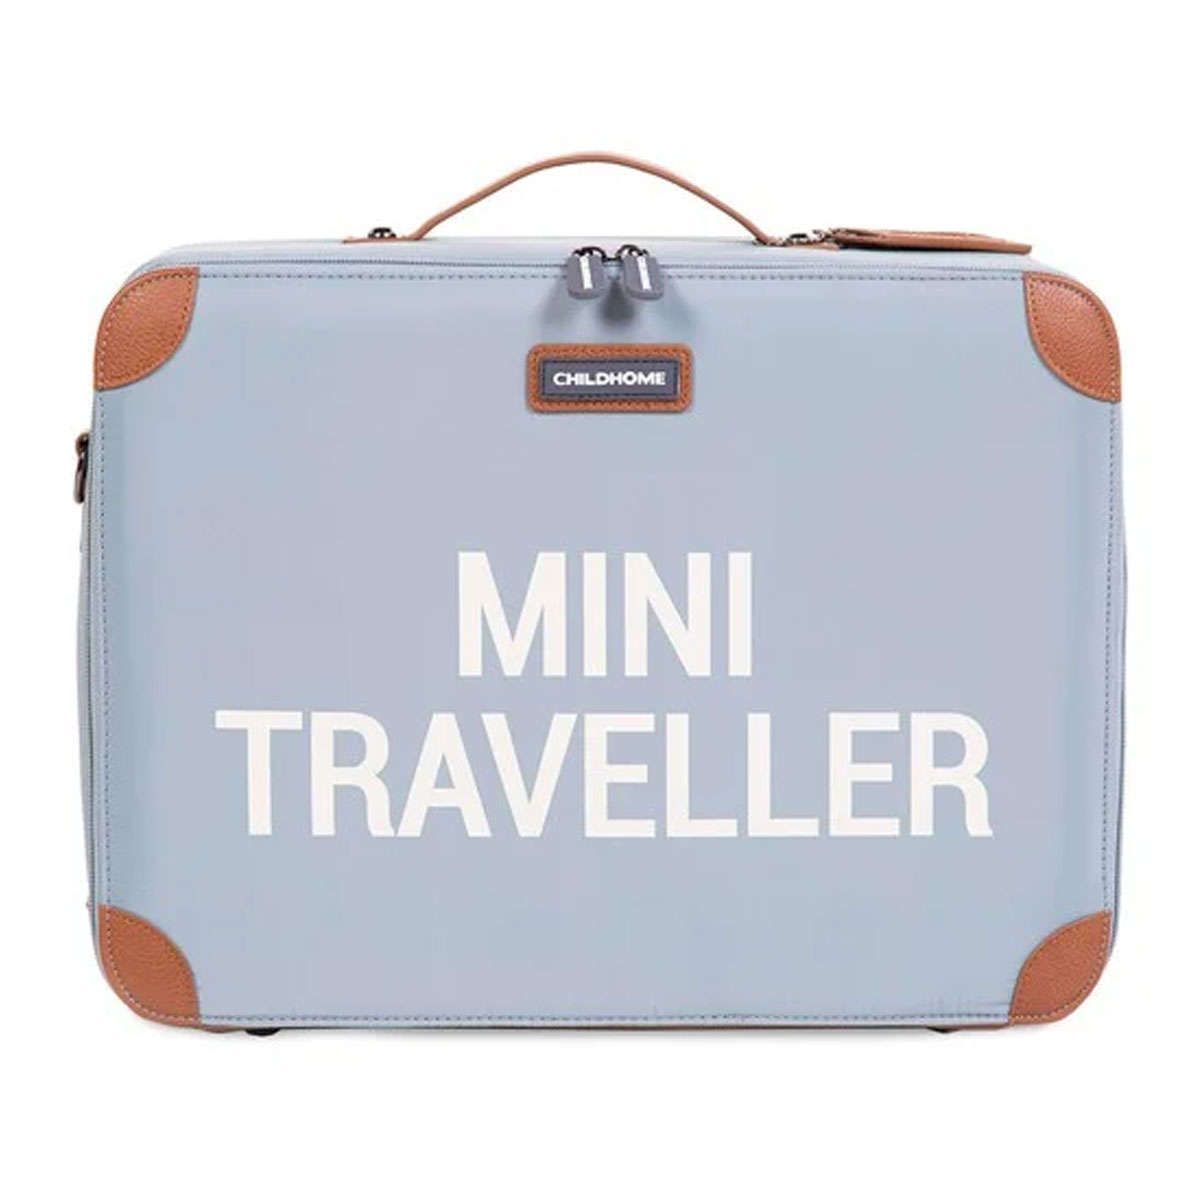 Παιδική βαλίτσα Mini Traveller grey-off white Childhome